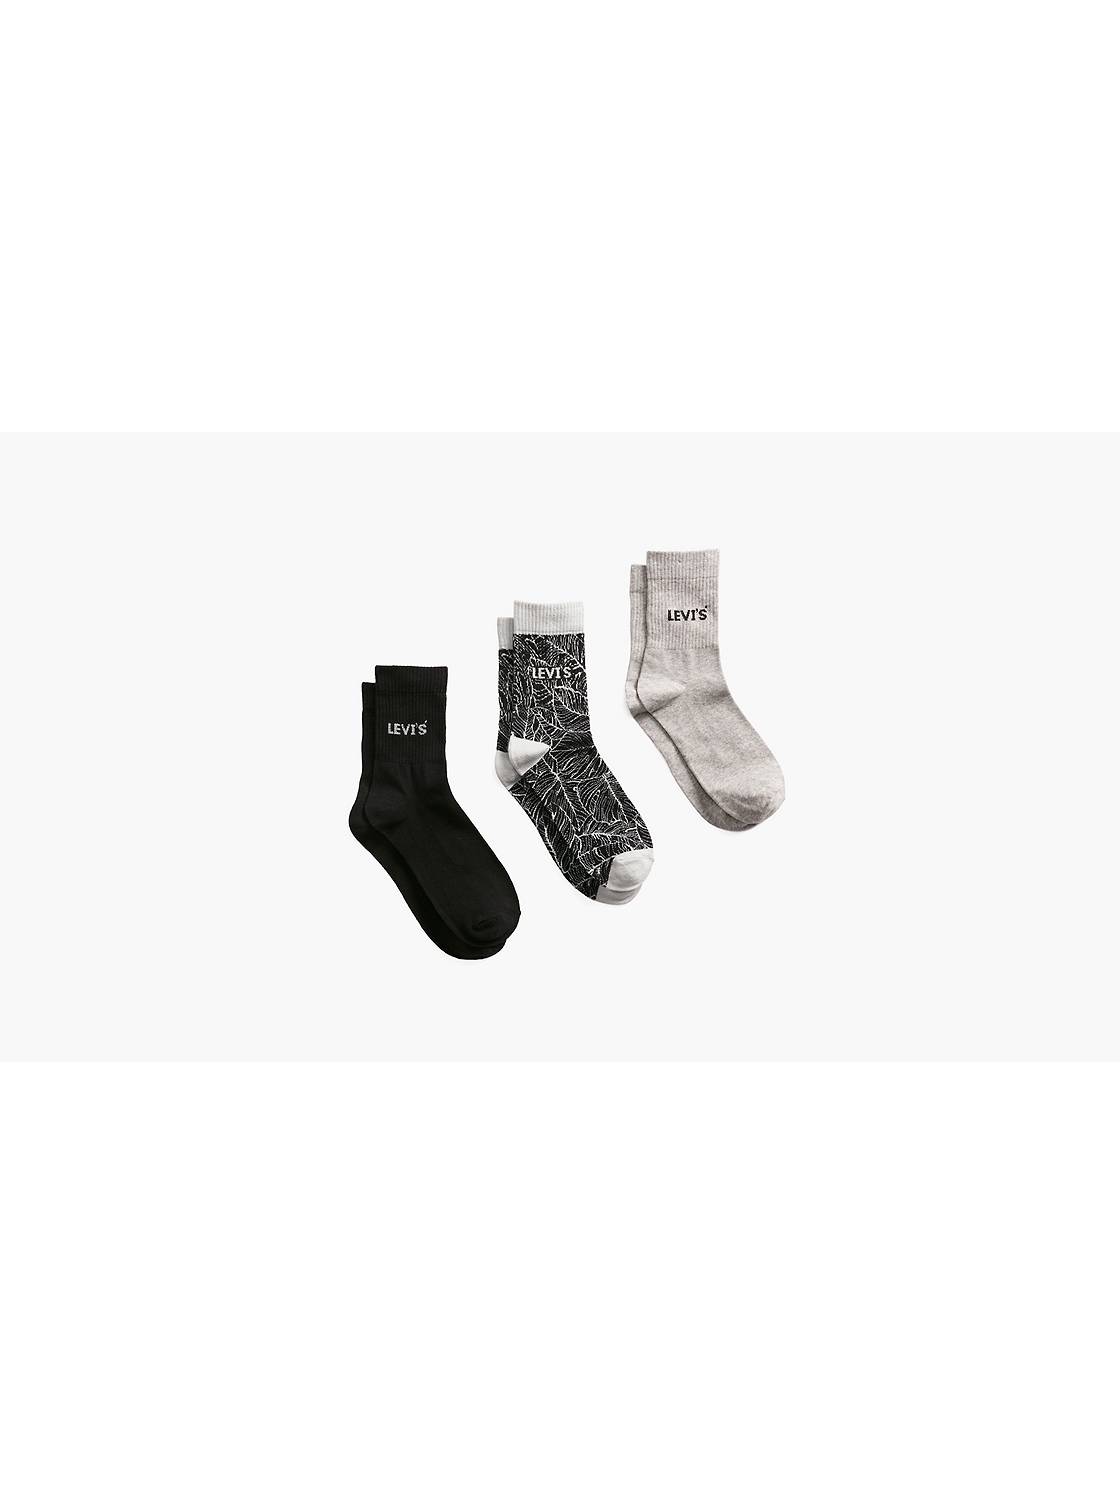 Men's Underwear & Socks